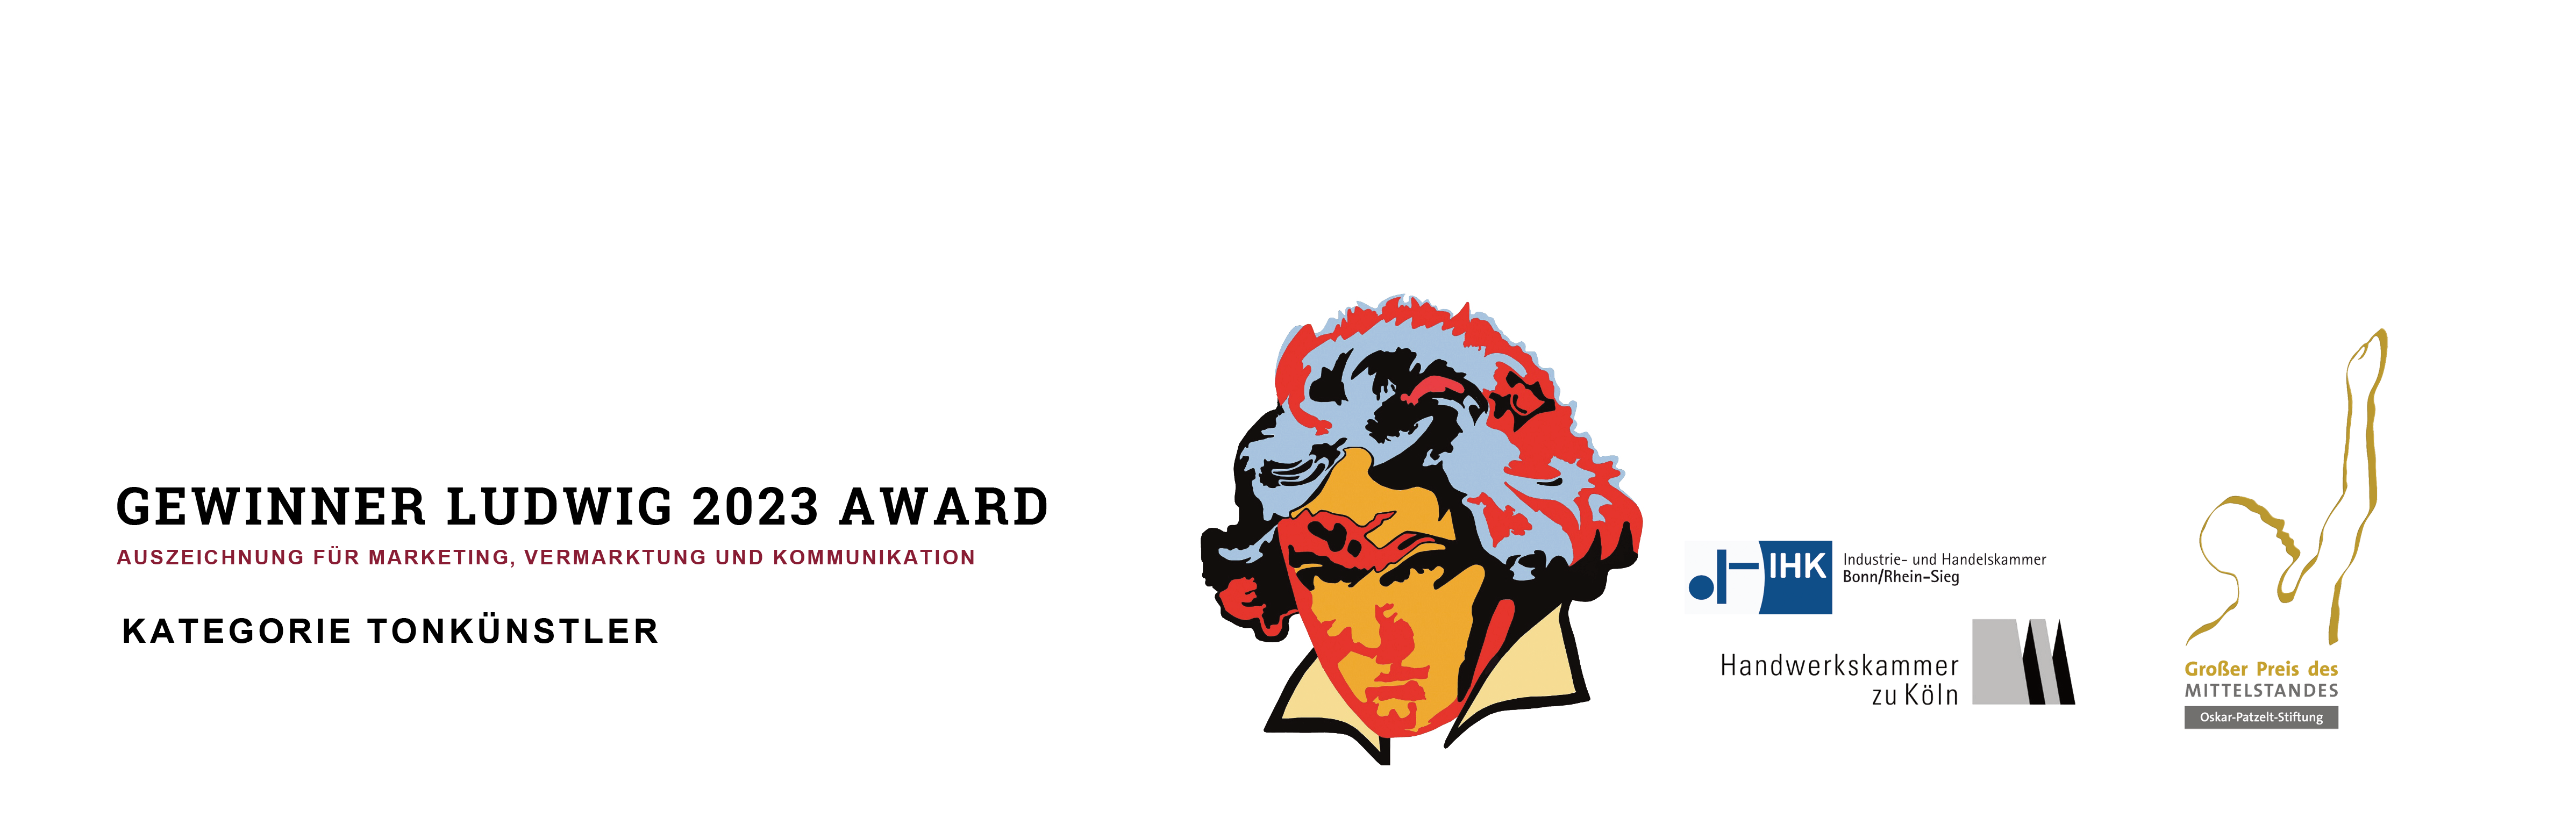 Das Logo des Ludwig 2023 Wettbewerb Gewinner Tonkünstlers. Industrie- und Handelskammer Bonn/Rhein-Sieg, Handwerkskammer zu Köln und großer Preis des Mittelstandes Oskar-Patzel-Stiftung, Drachenfelsbahn